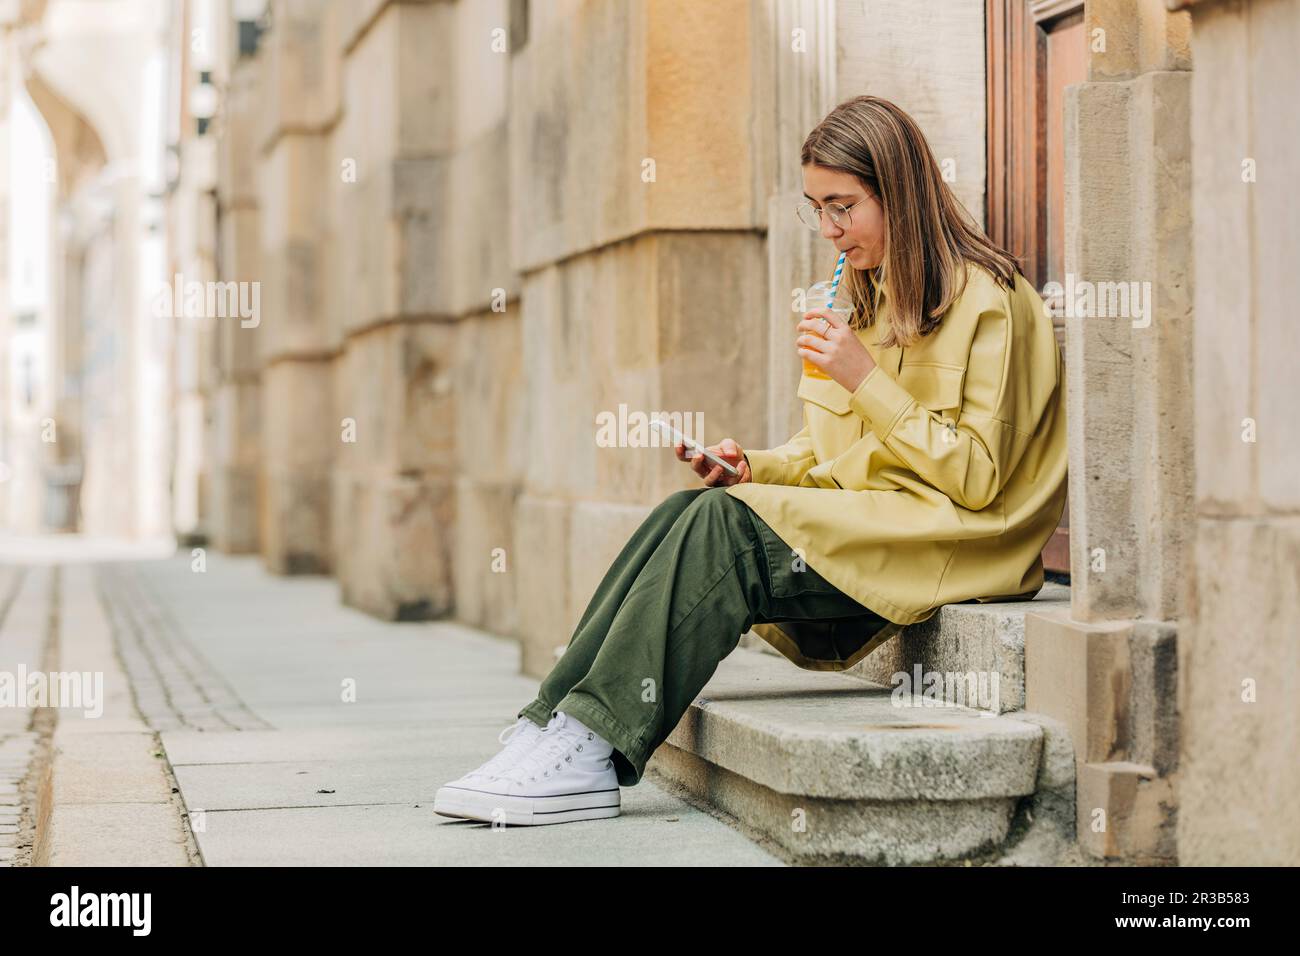 Une adolescente boit du jus et utilise un smartphone assis sur des marches Banque D'Images